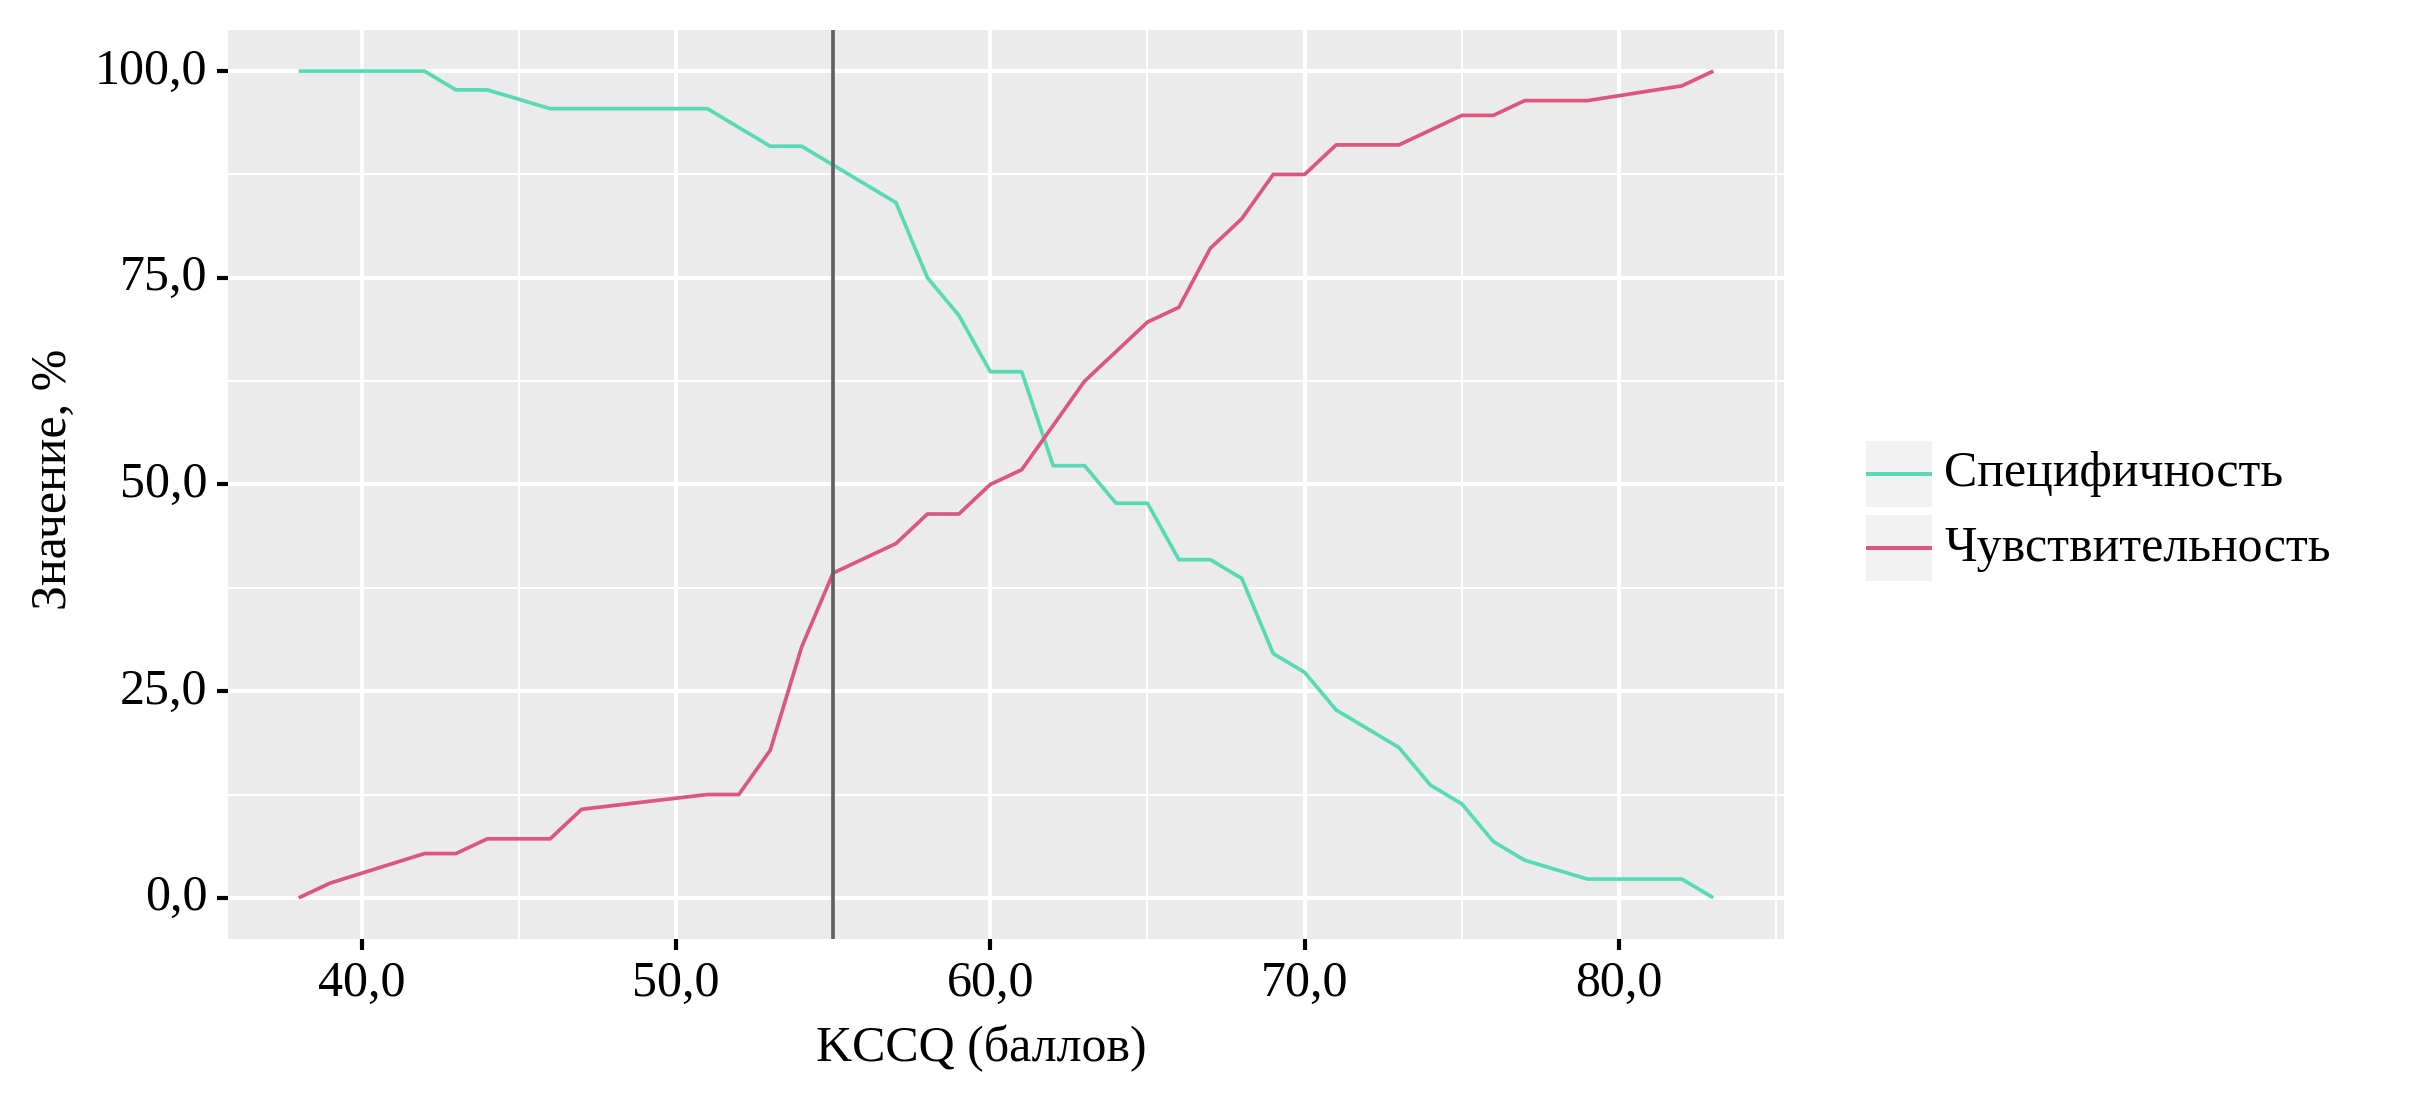 Анализ чувствительности и специфичности модели в зависимости от пороговых значений показателя «KCCQ»